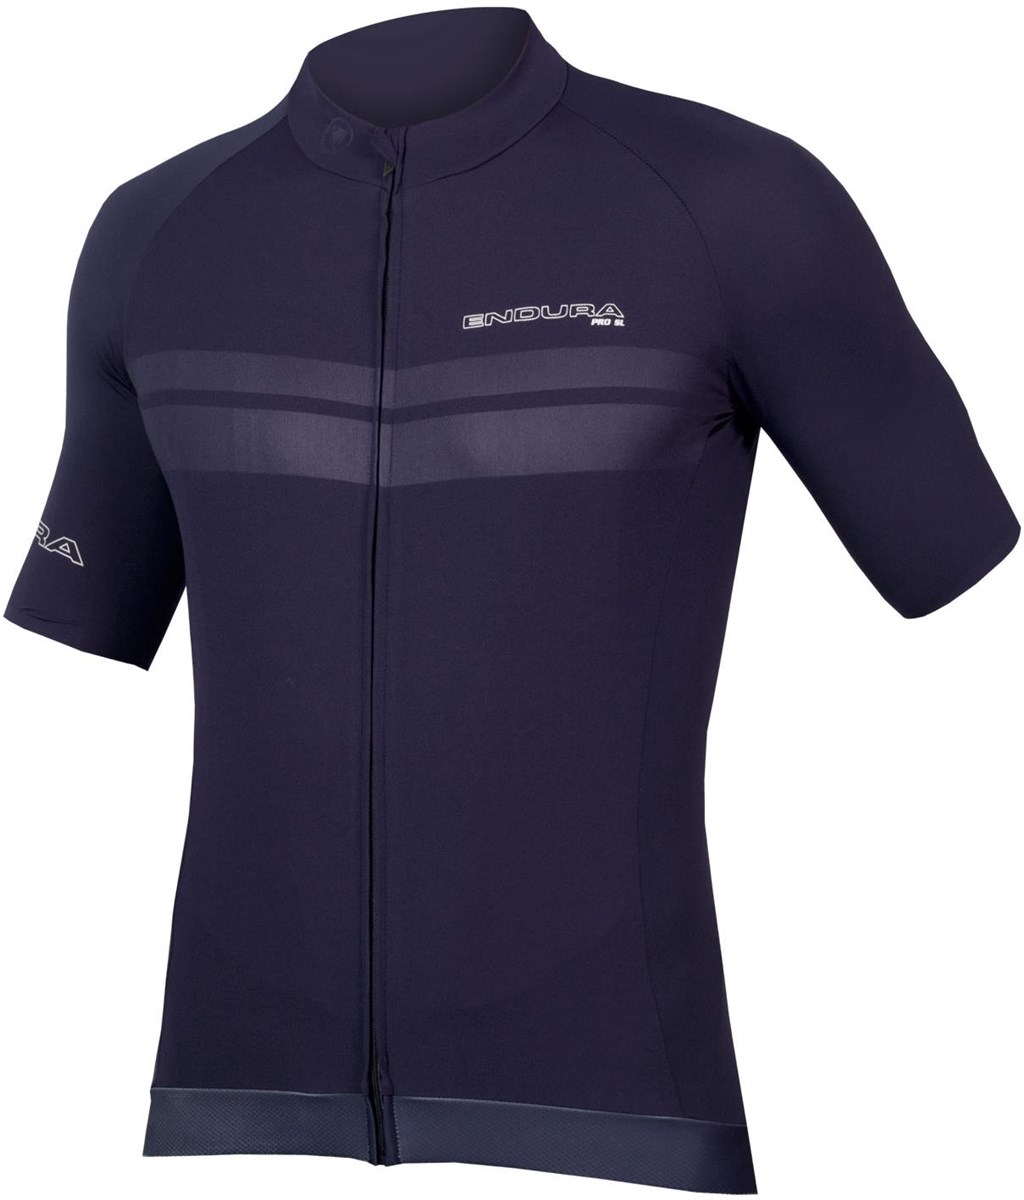 Endura Pro SL Short Sleeve Jersey product image